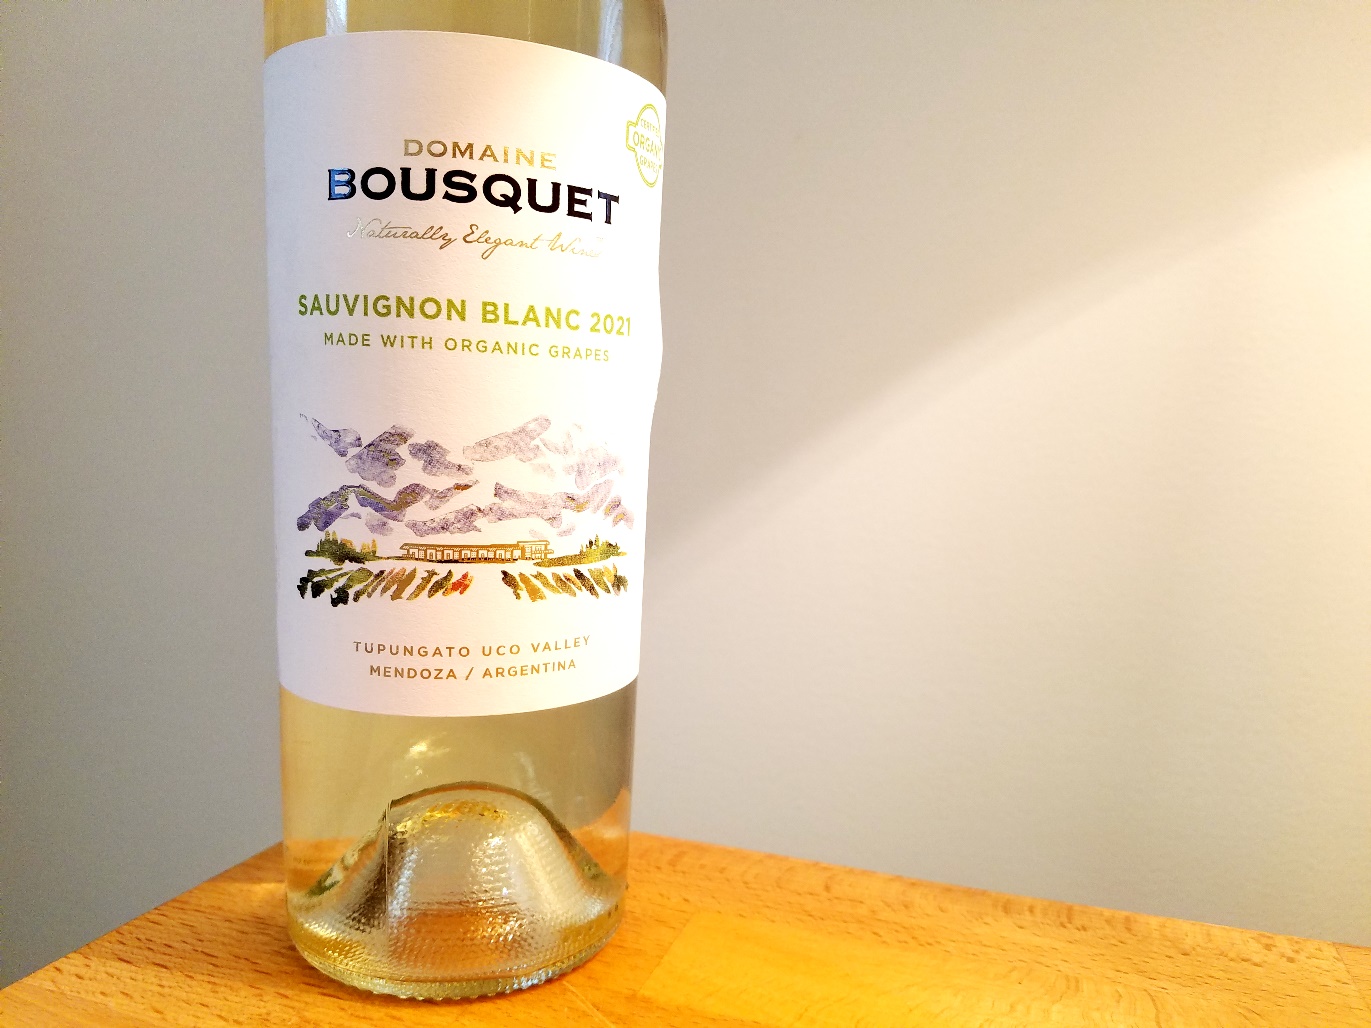 Domaine Bousquet, Sauvignon Blanc 2021, Tupungato, Uco Valley, Mendoza, Argentina, Wine Casual